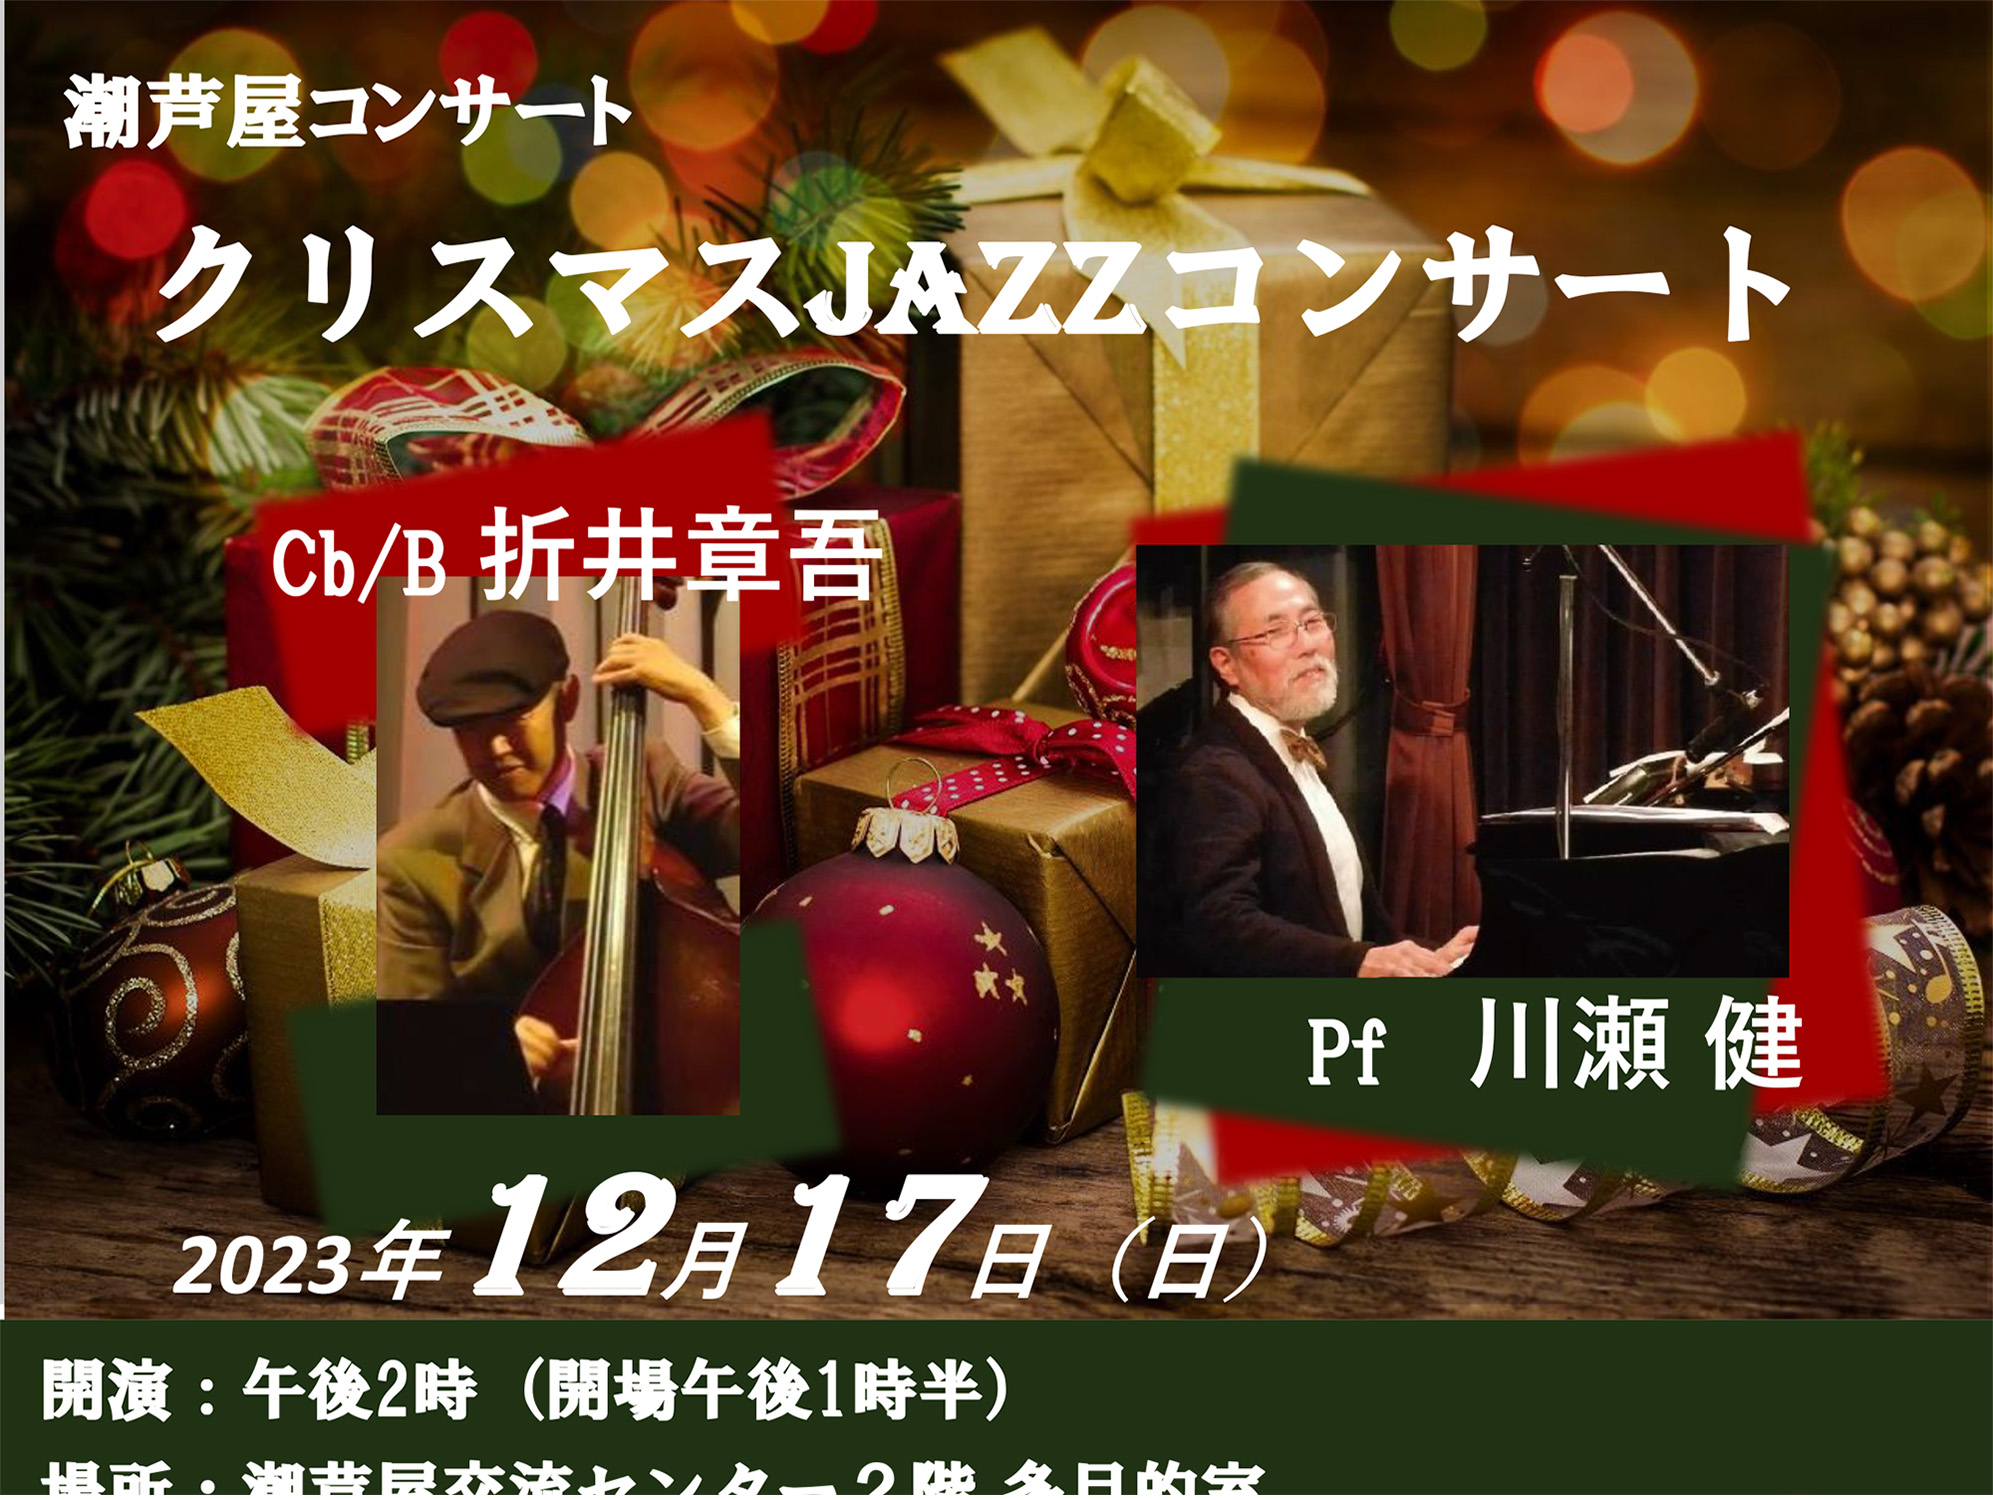 2023年12月17日 潮芦屋コンサート クリスマスJAZZコンサート